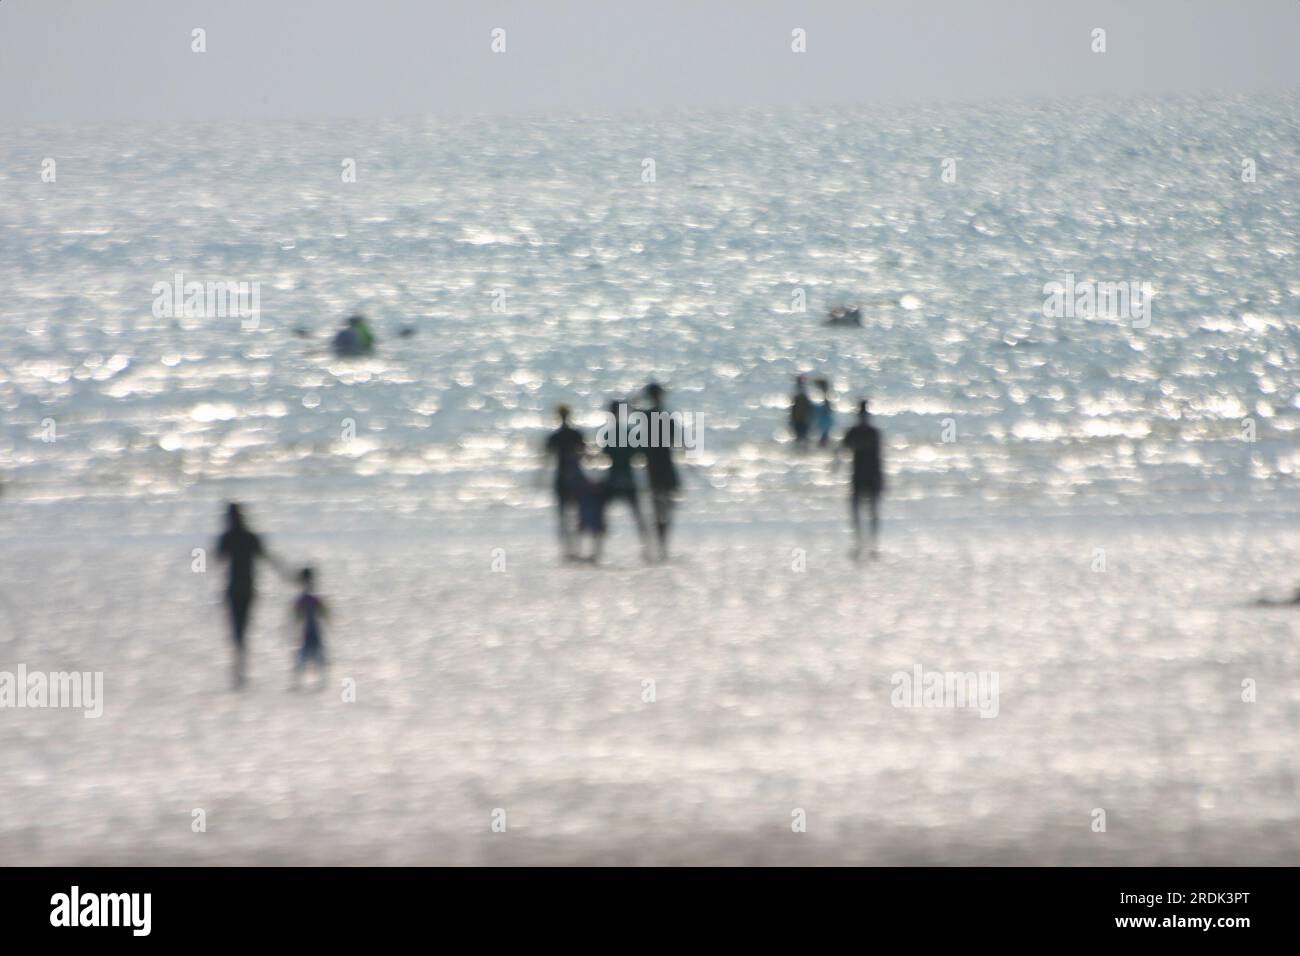 Ein verschwommenes Bild, auf dem viele Menschen im Wasser spielen und in Richtung des flachen Wassers gehen. Himmel und Meer haben fast die gleiche Farbe und das Stockfoto